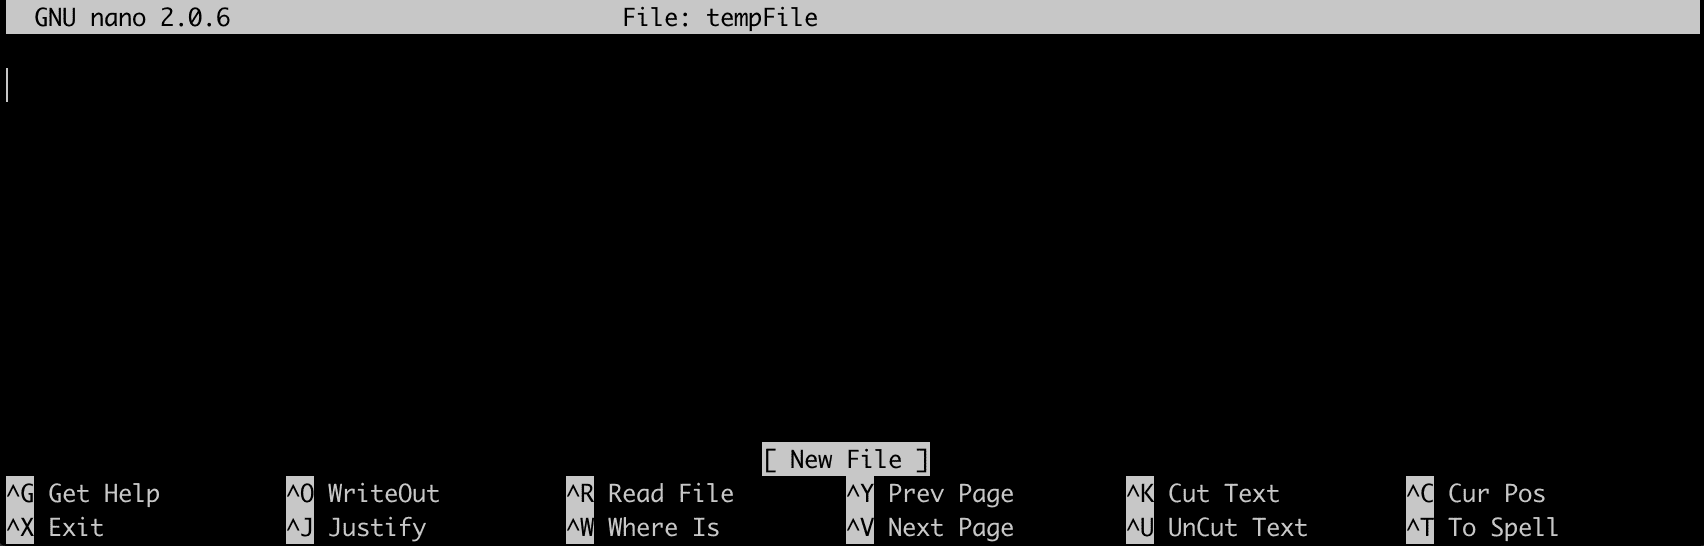 file terminal 2